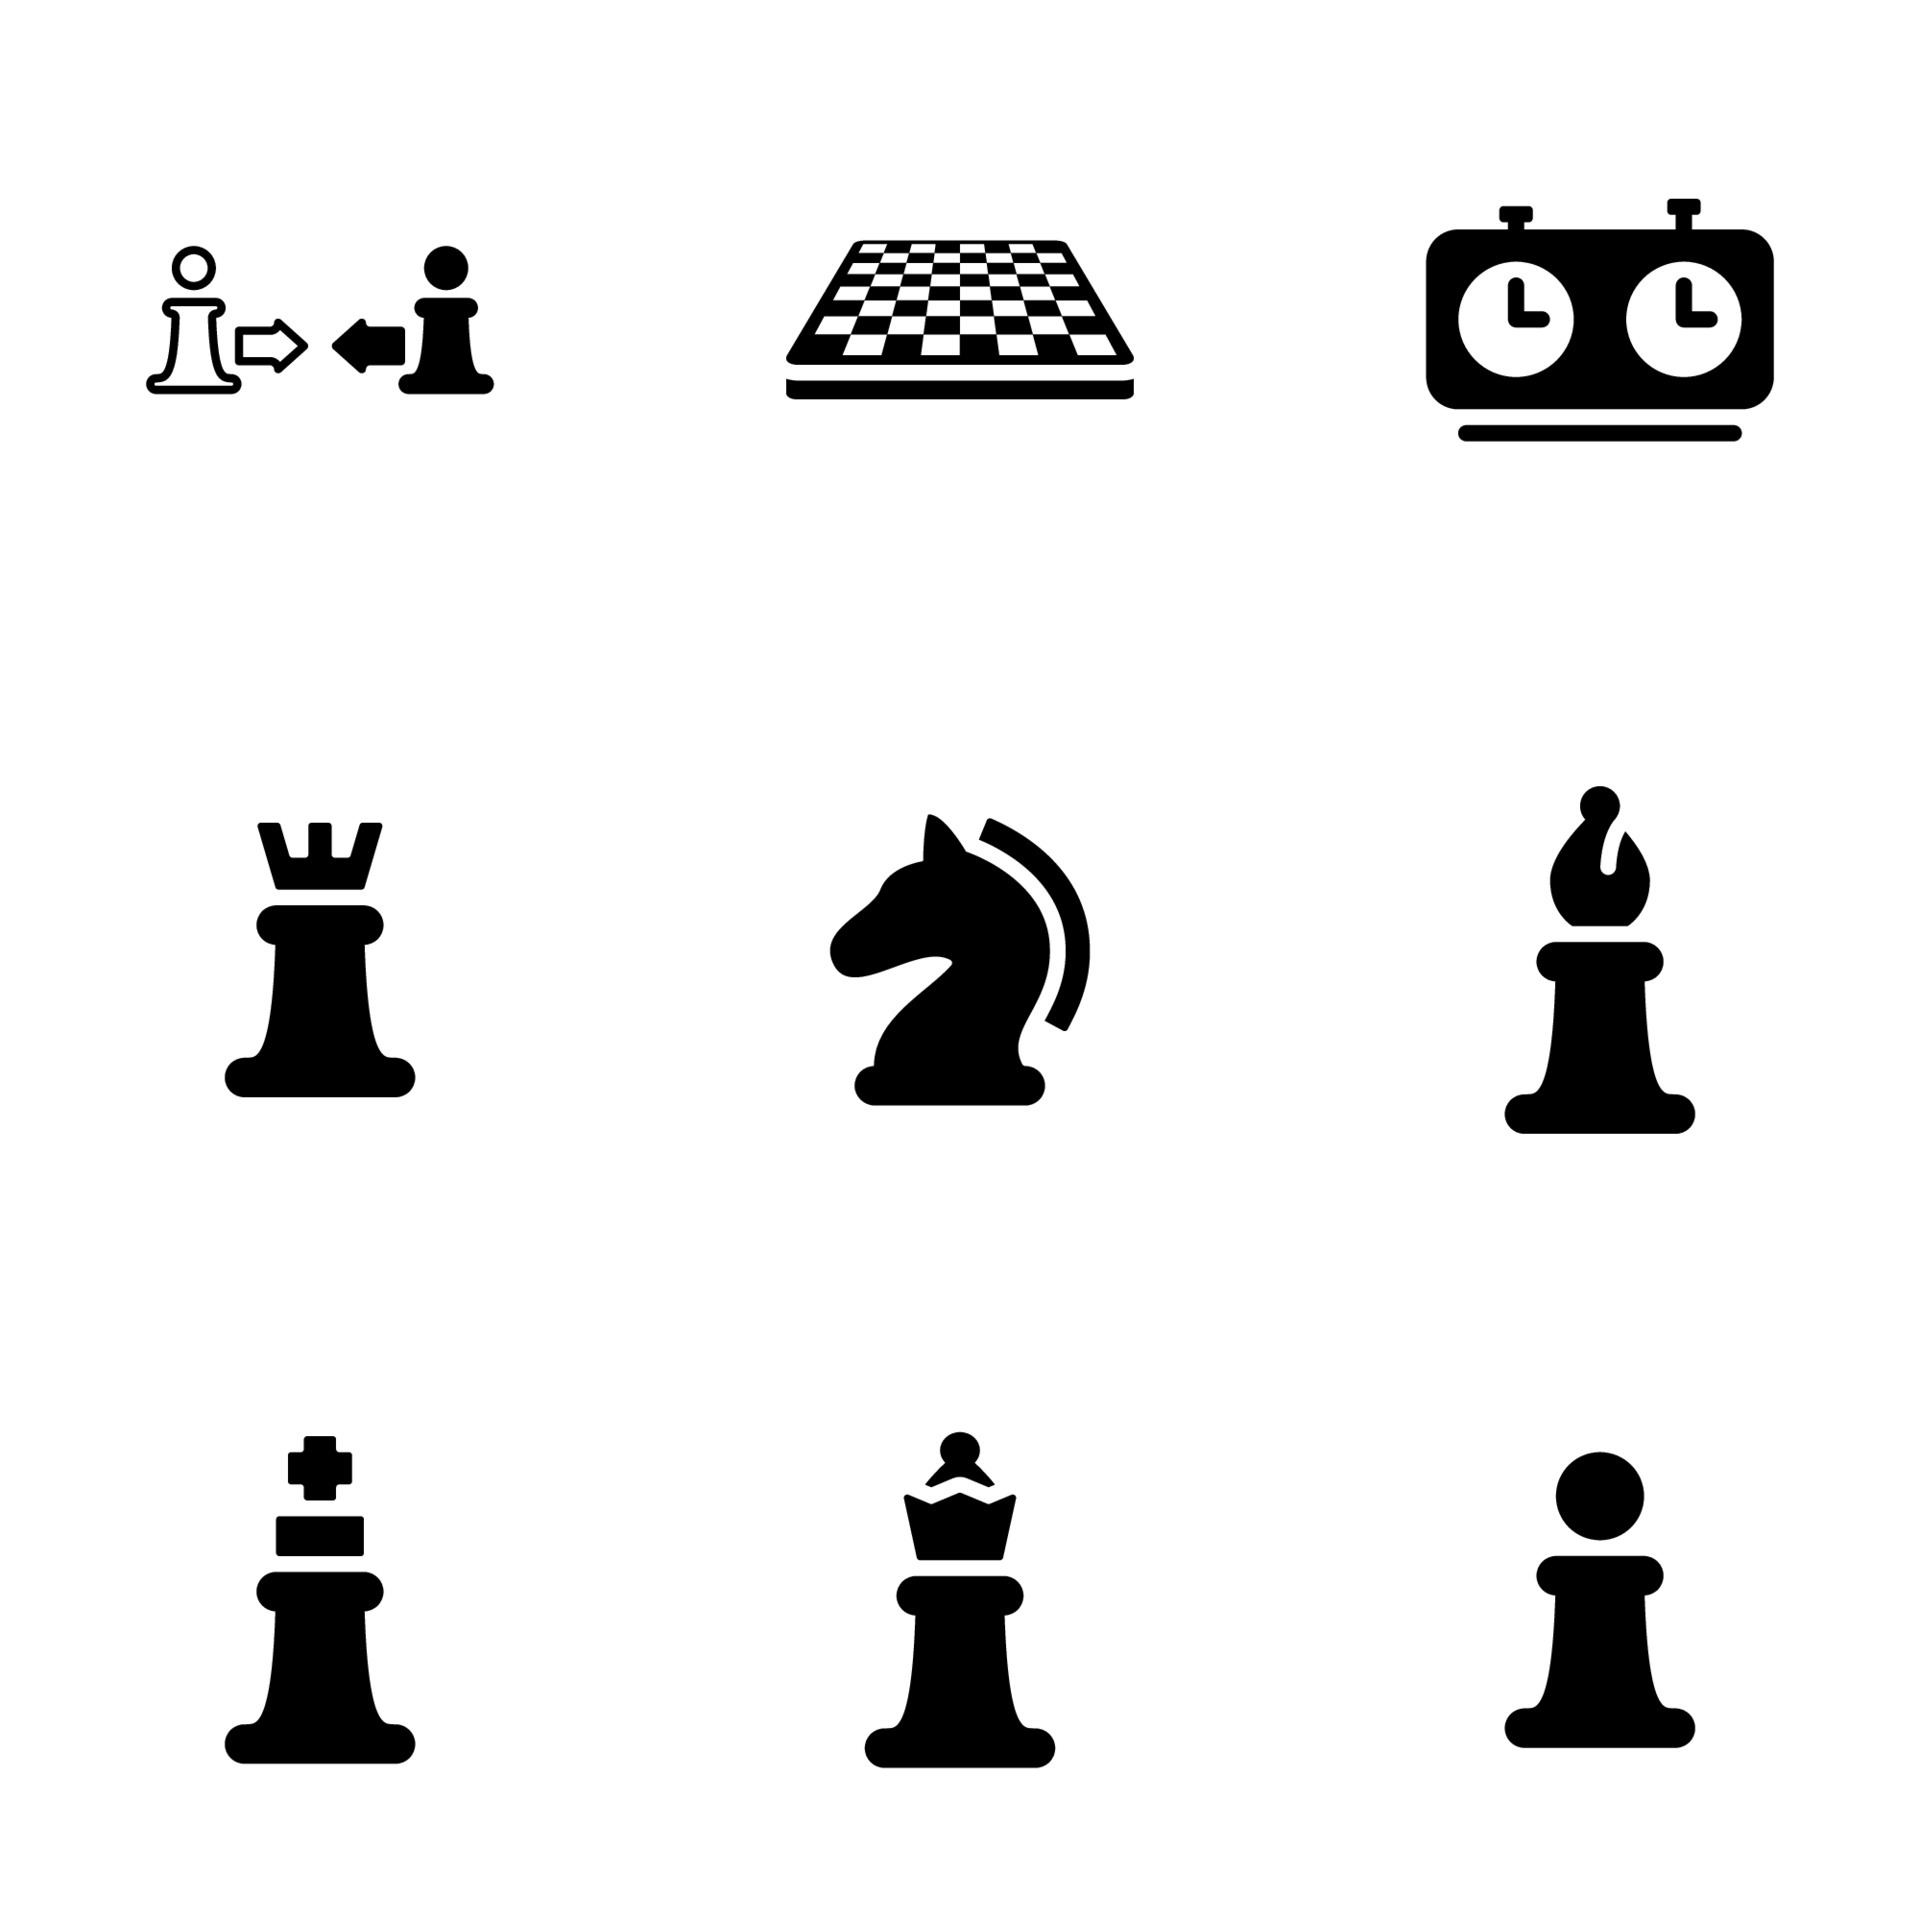 Jogo de xadrez - ícones de esportes e competição grátis